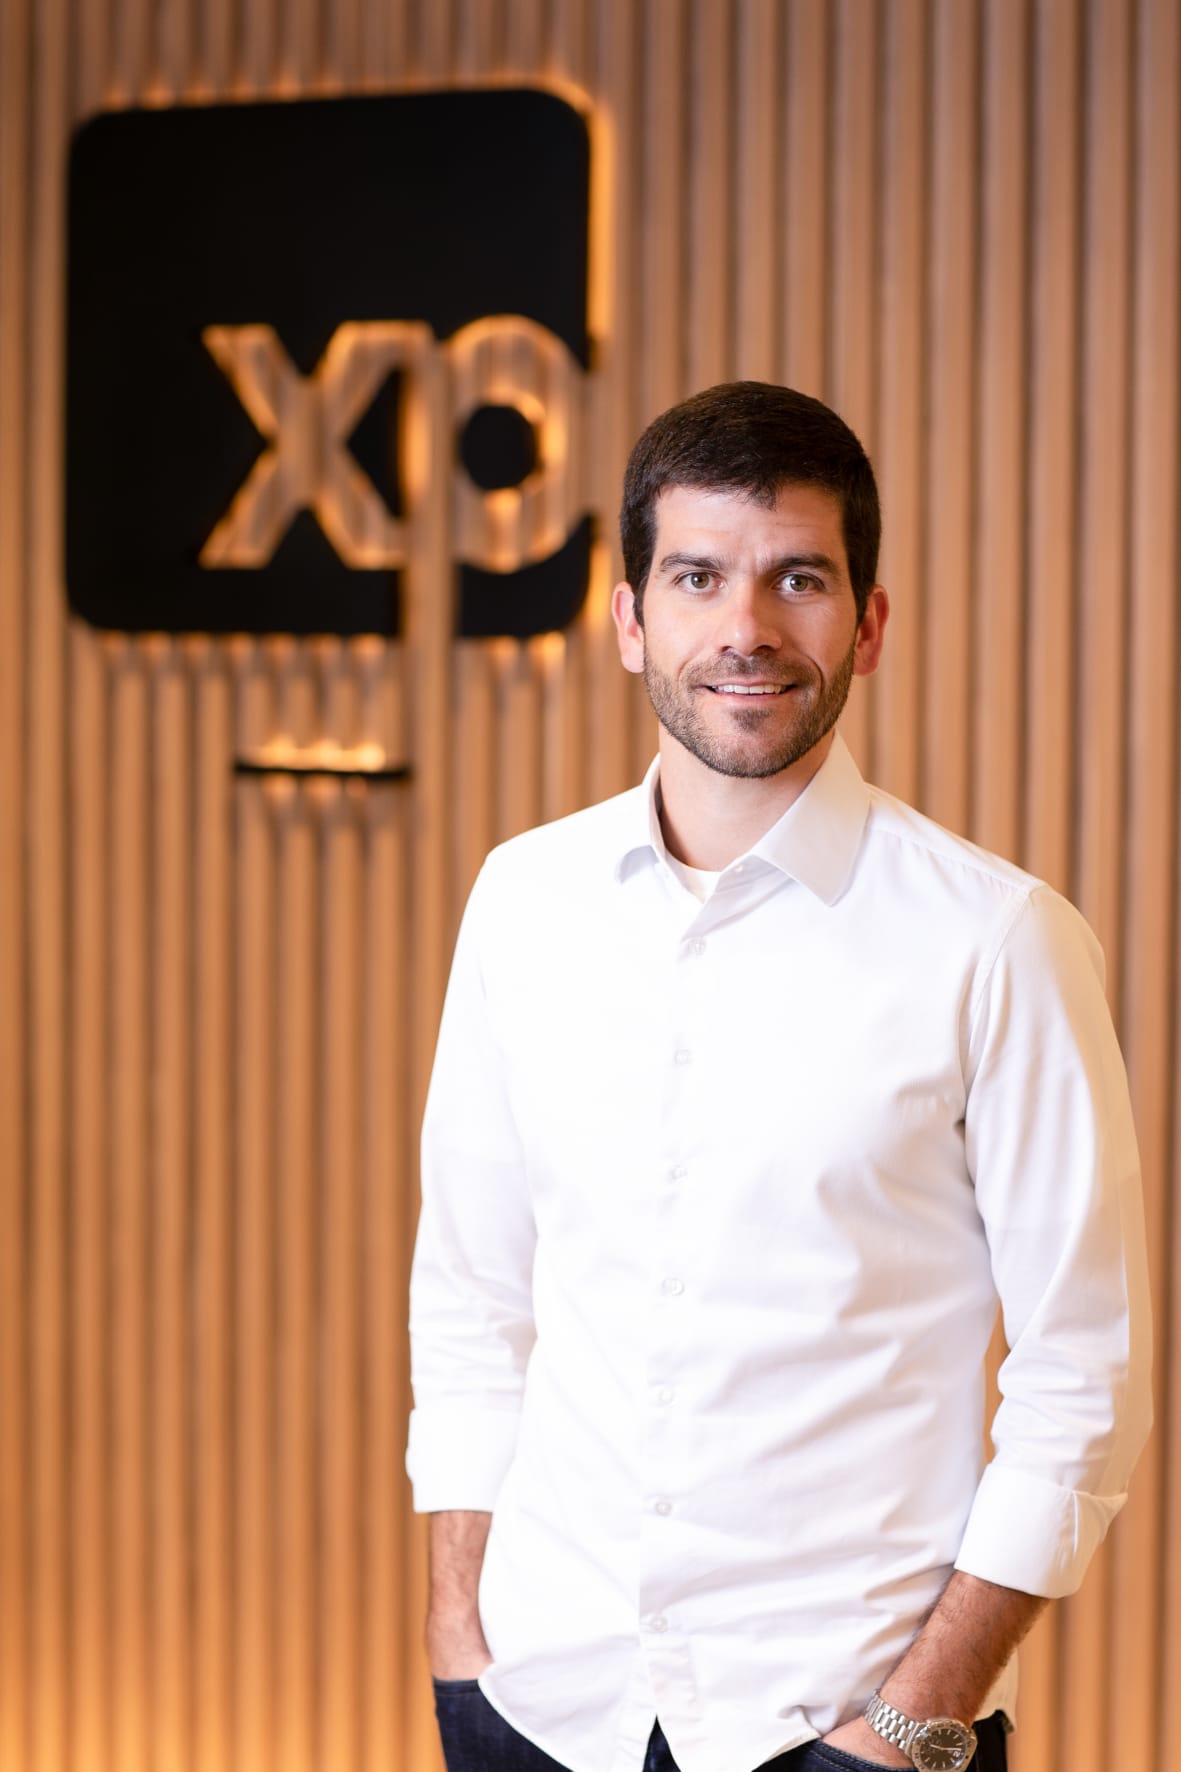 XP lança ferramenta para negociação de fundos alternativos no mercado secundário